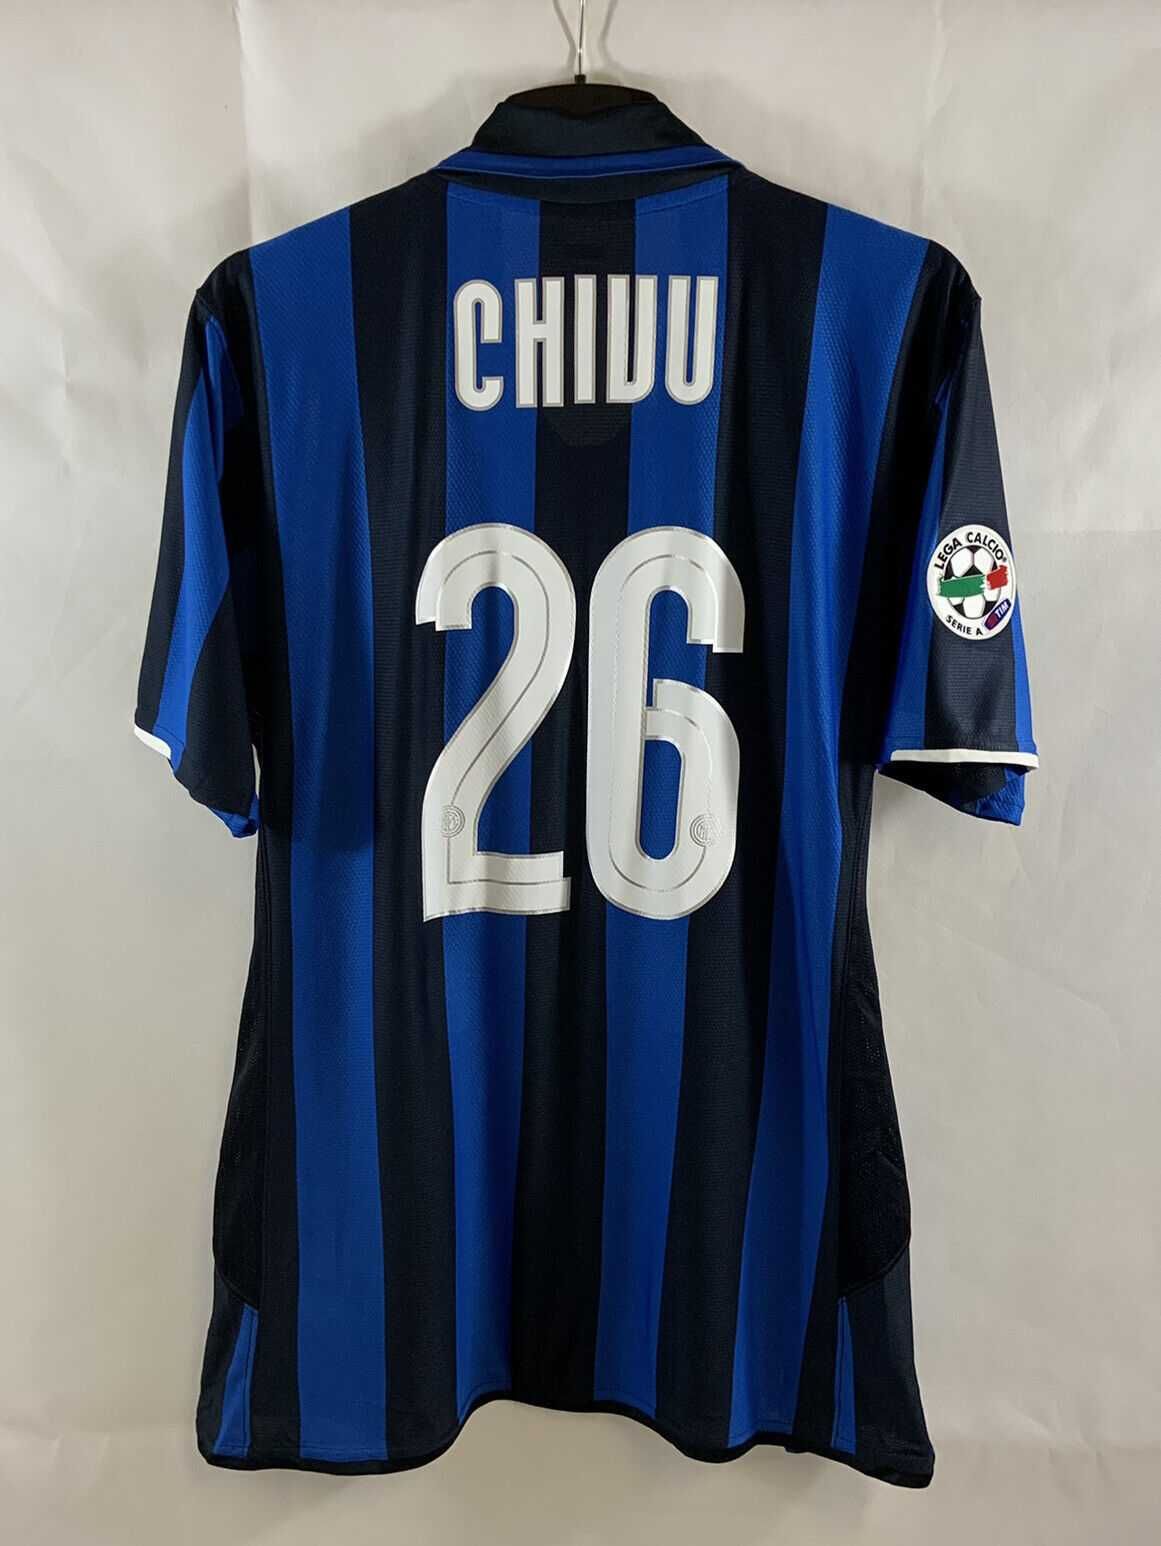 Tricou fotbal Inter Milan 2007/08 - CHIVU 26